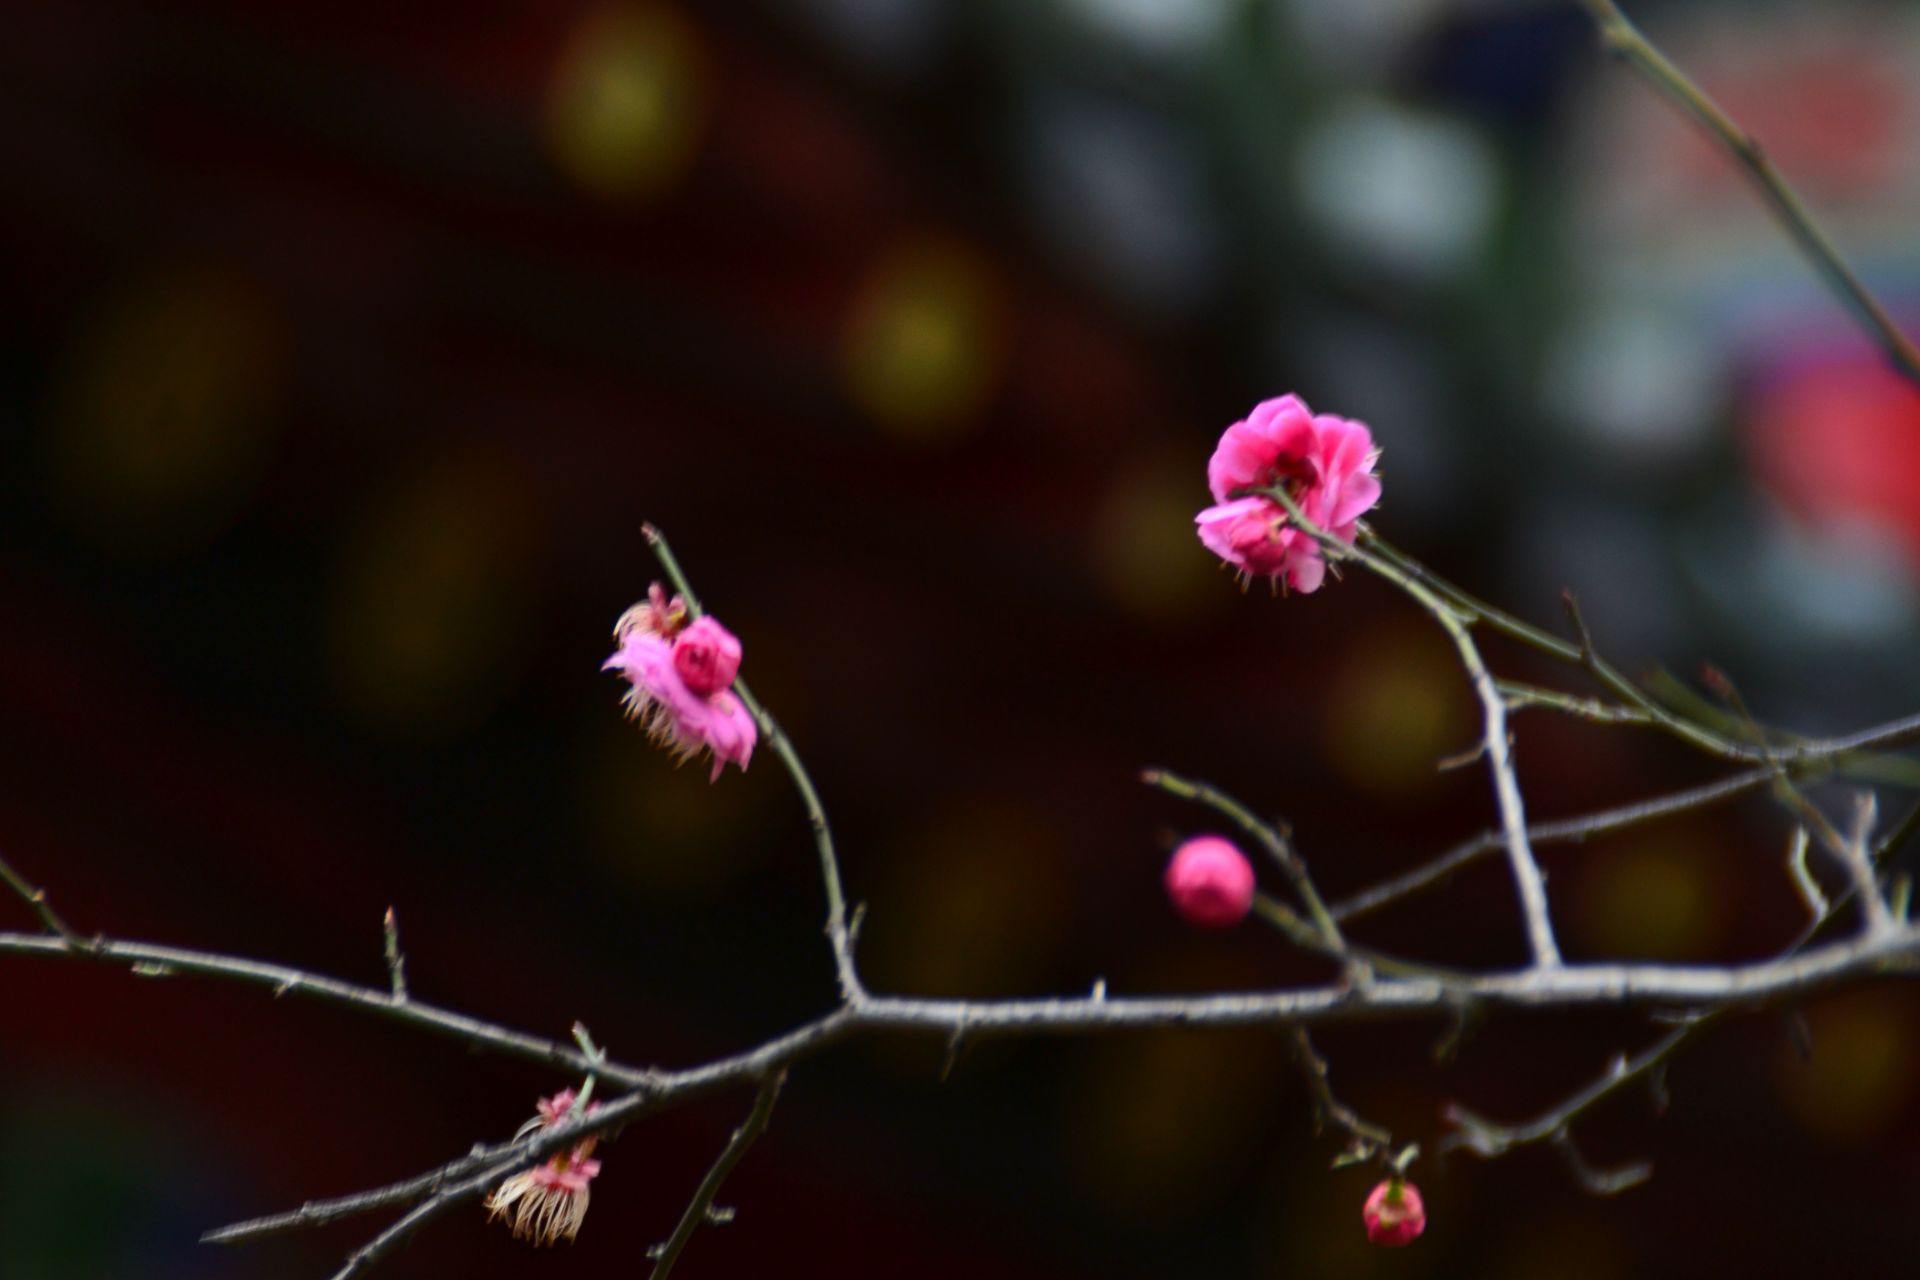 二月冬风中游藤王阁，时风时雨，这儿的花开得不多，还好有几棵腊梅红梅正开着。景区中还有歌舞表演，倒是让